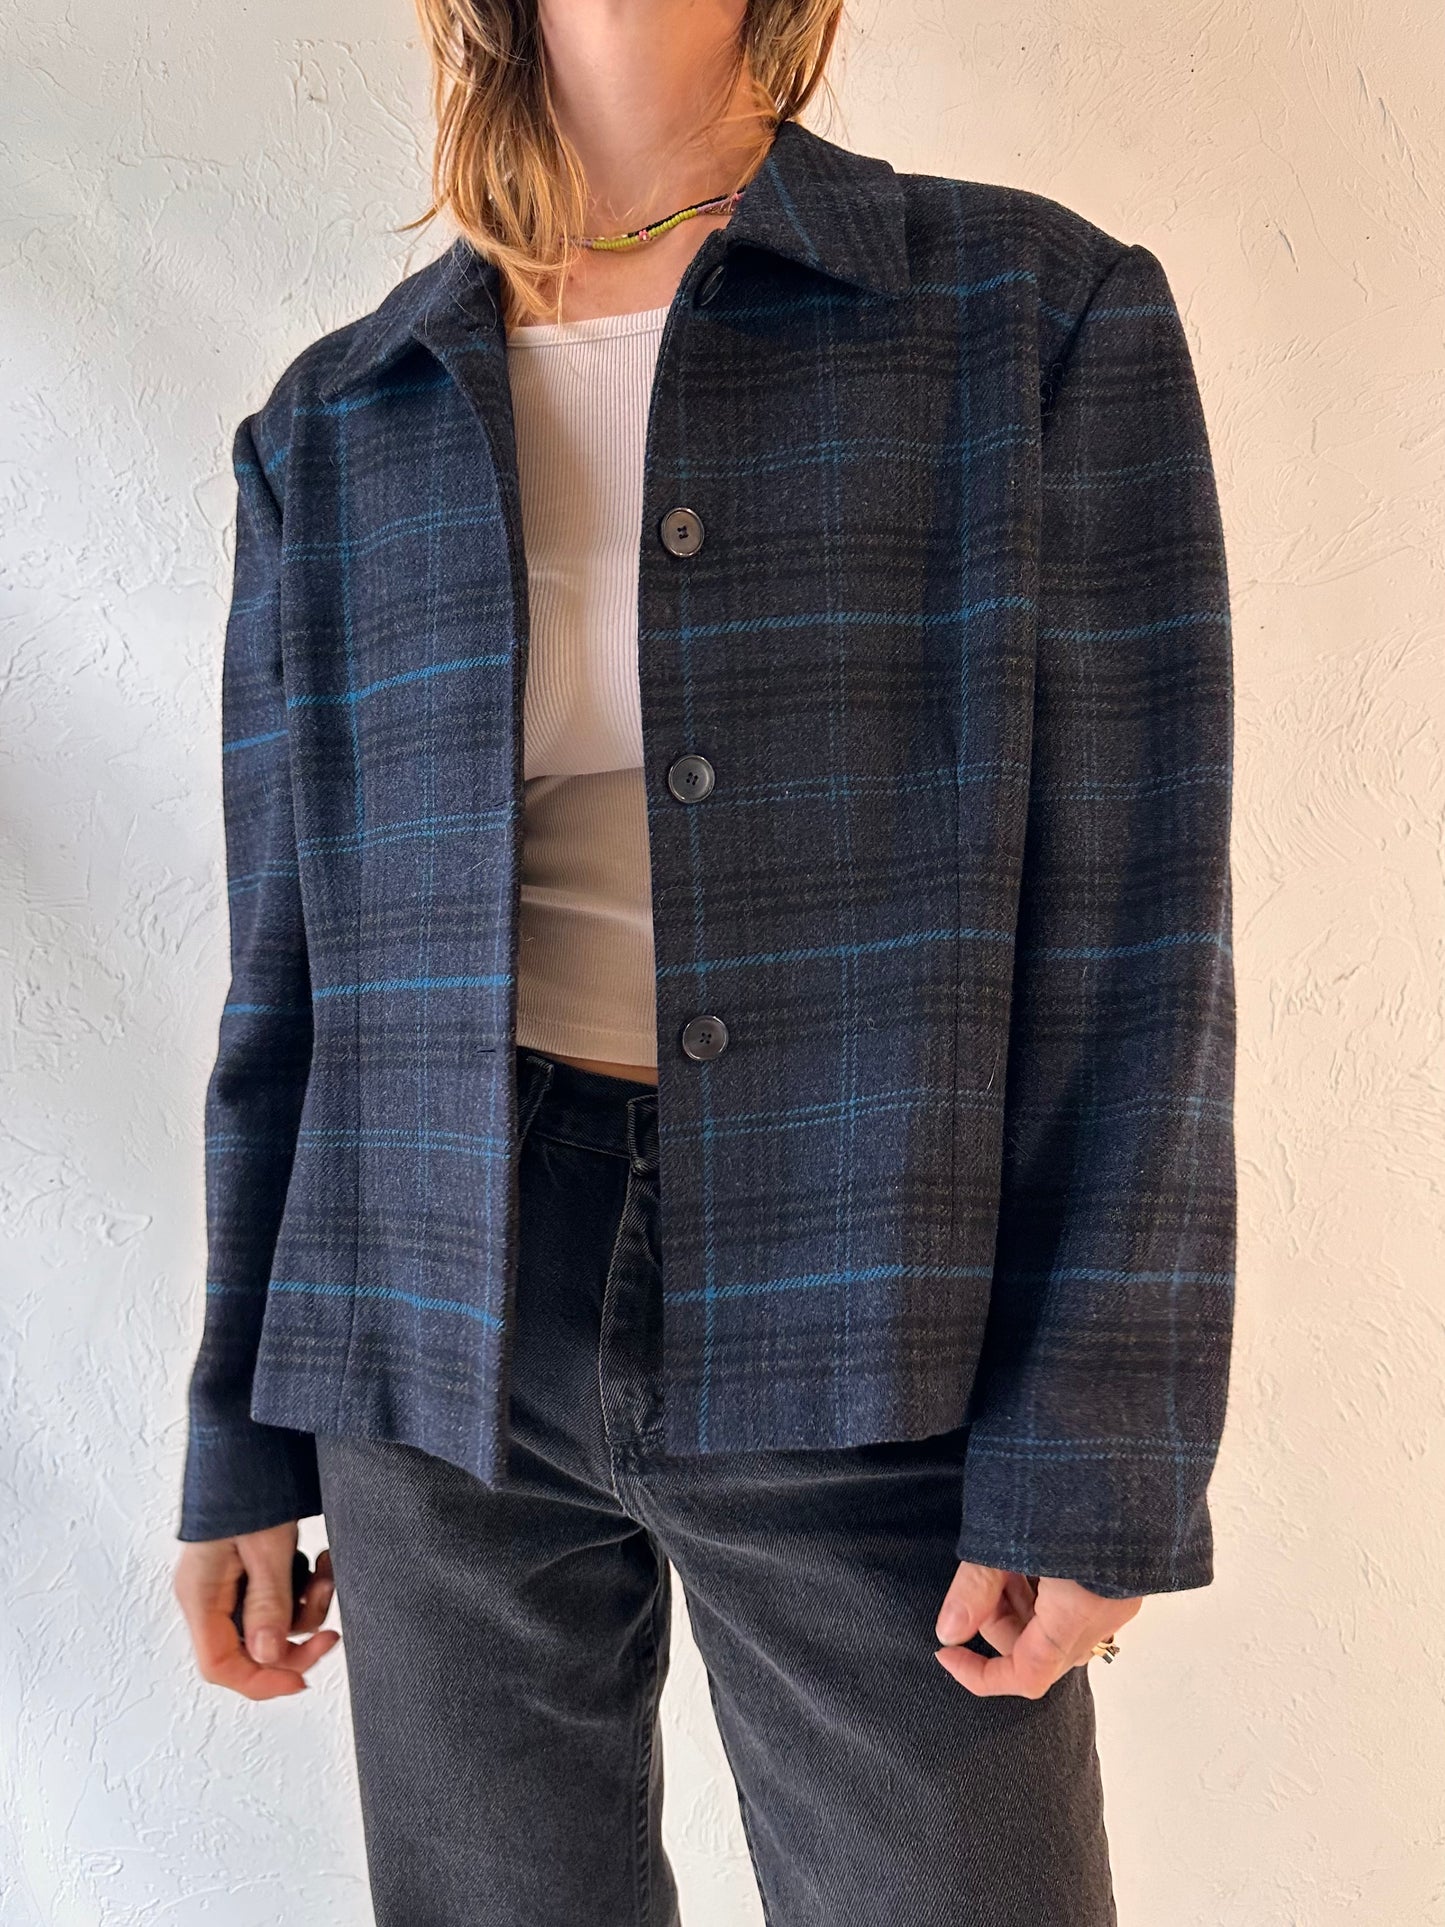 90s 'Jones New York' Plaid Wool Jacket / Large